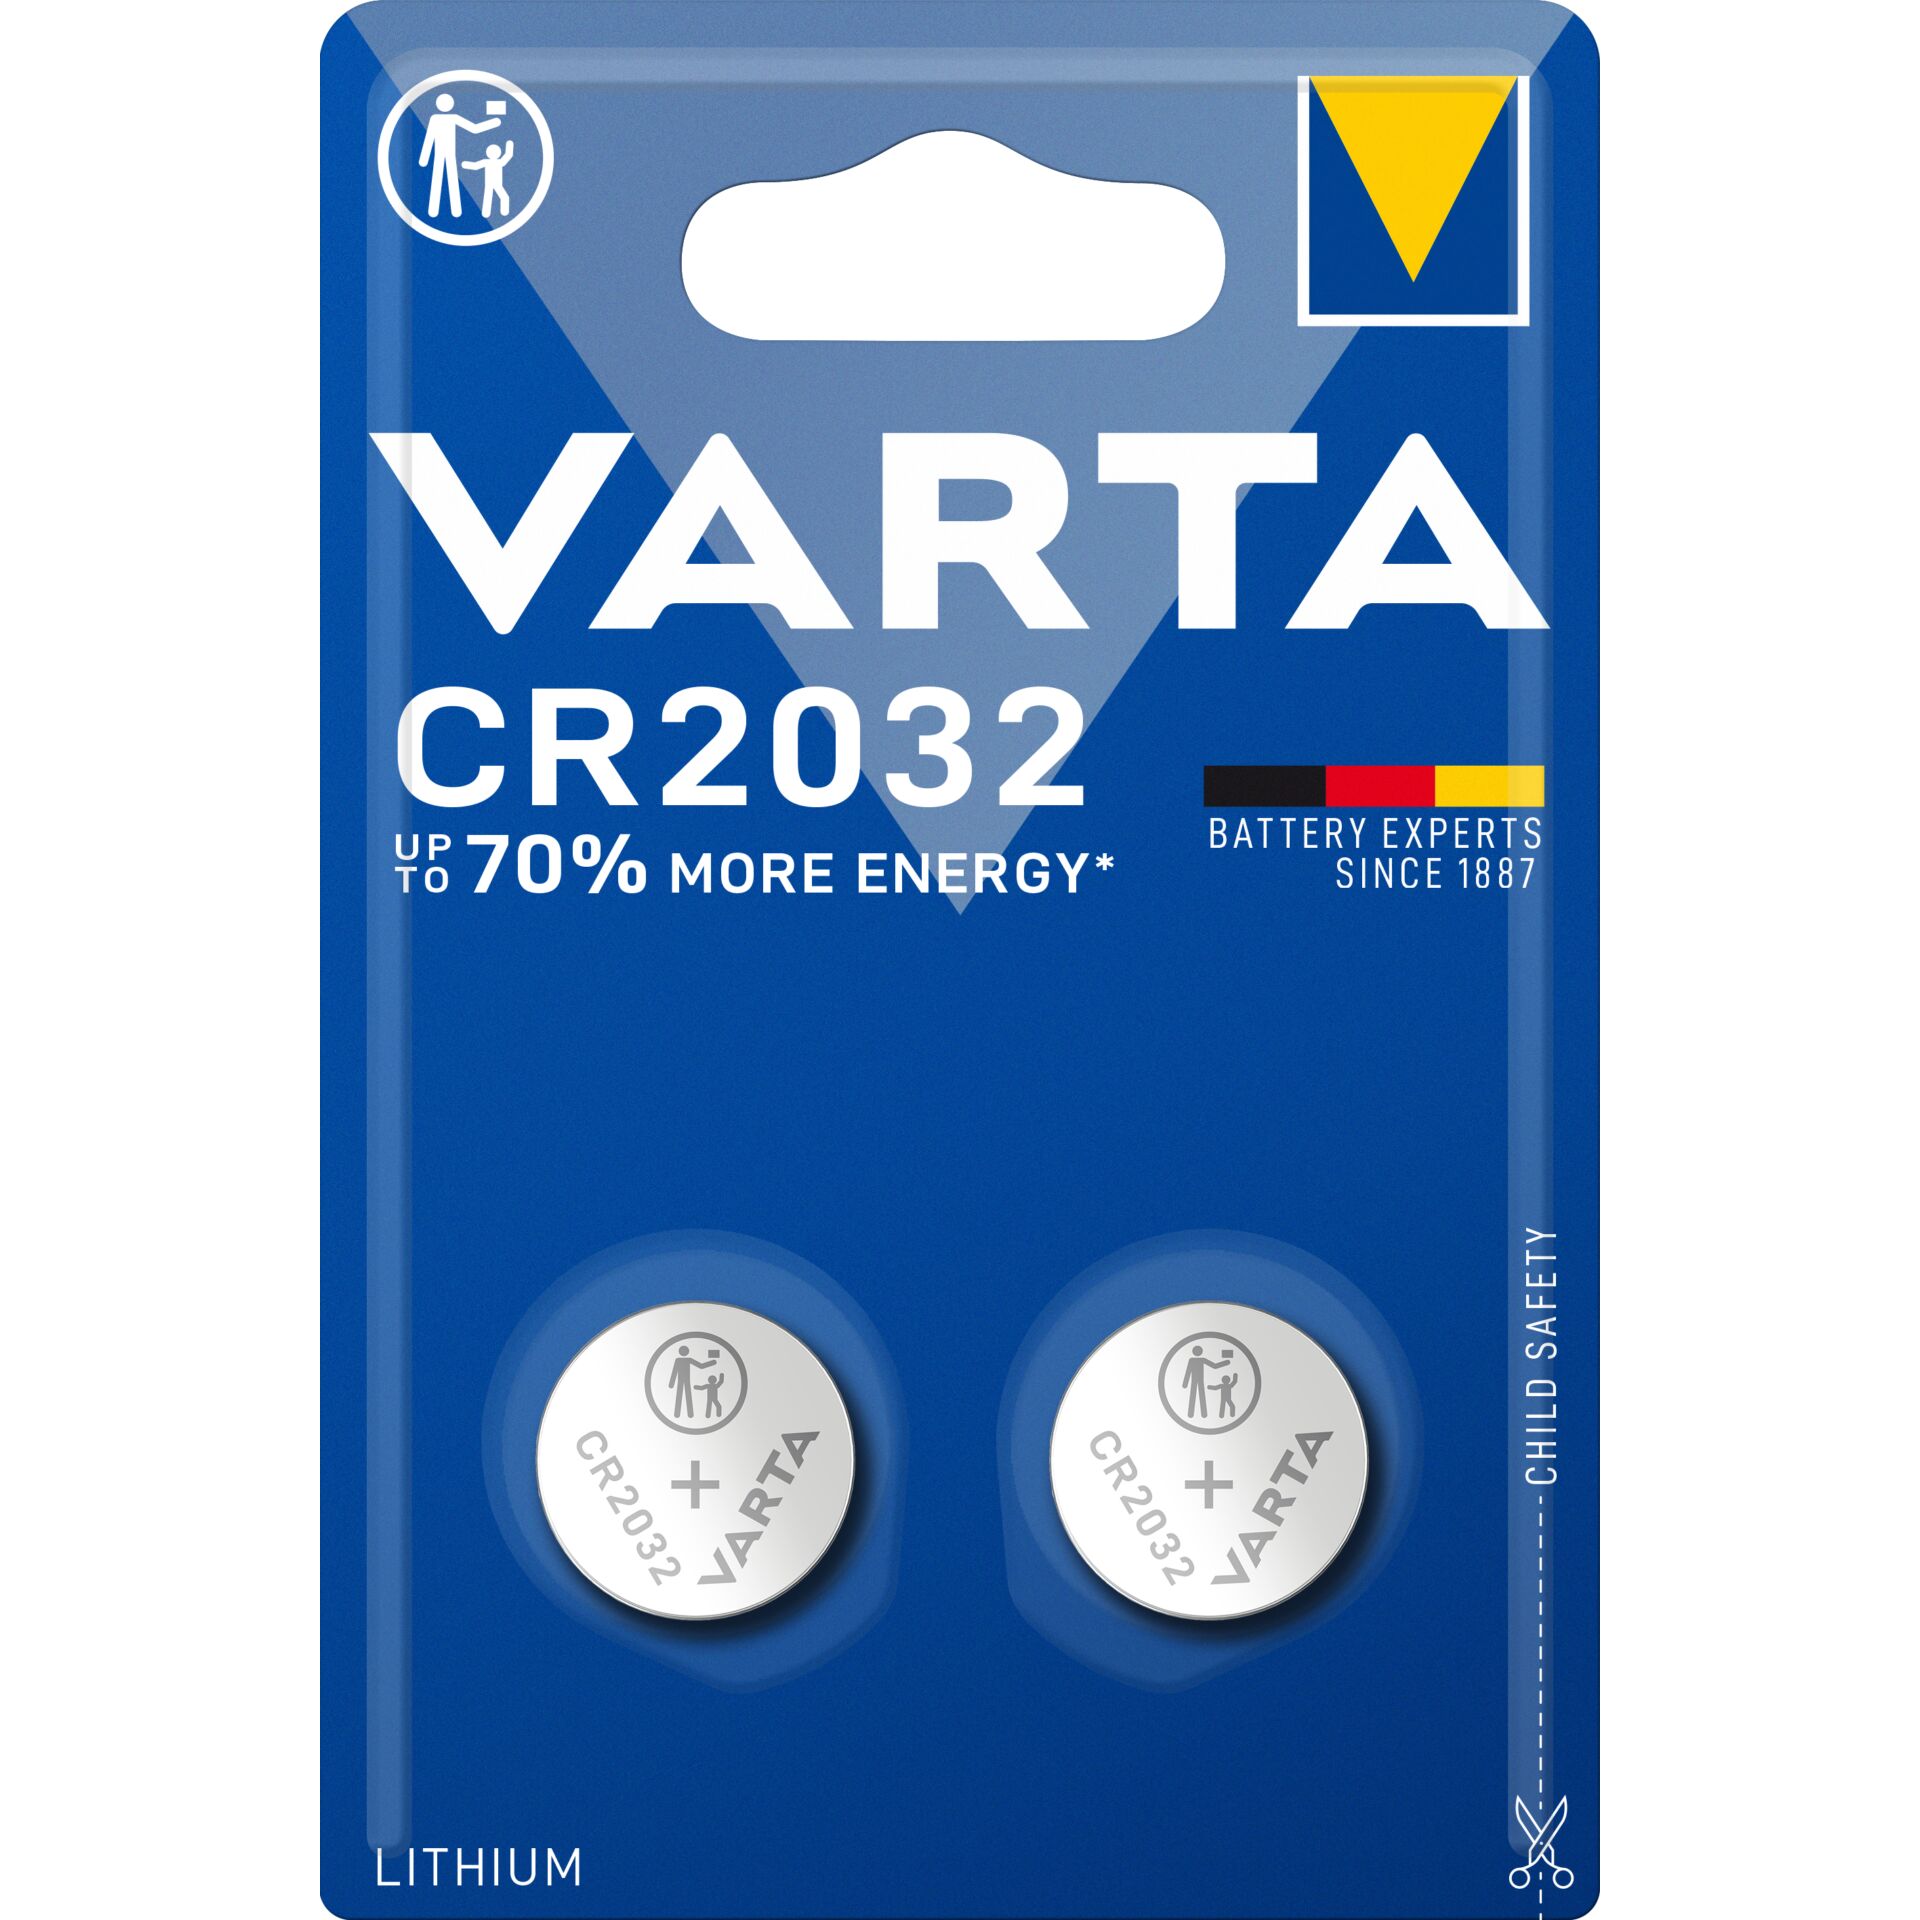 Varta CR 2032 Einwegbatterie CR2032 Lithium, 2er Pack 